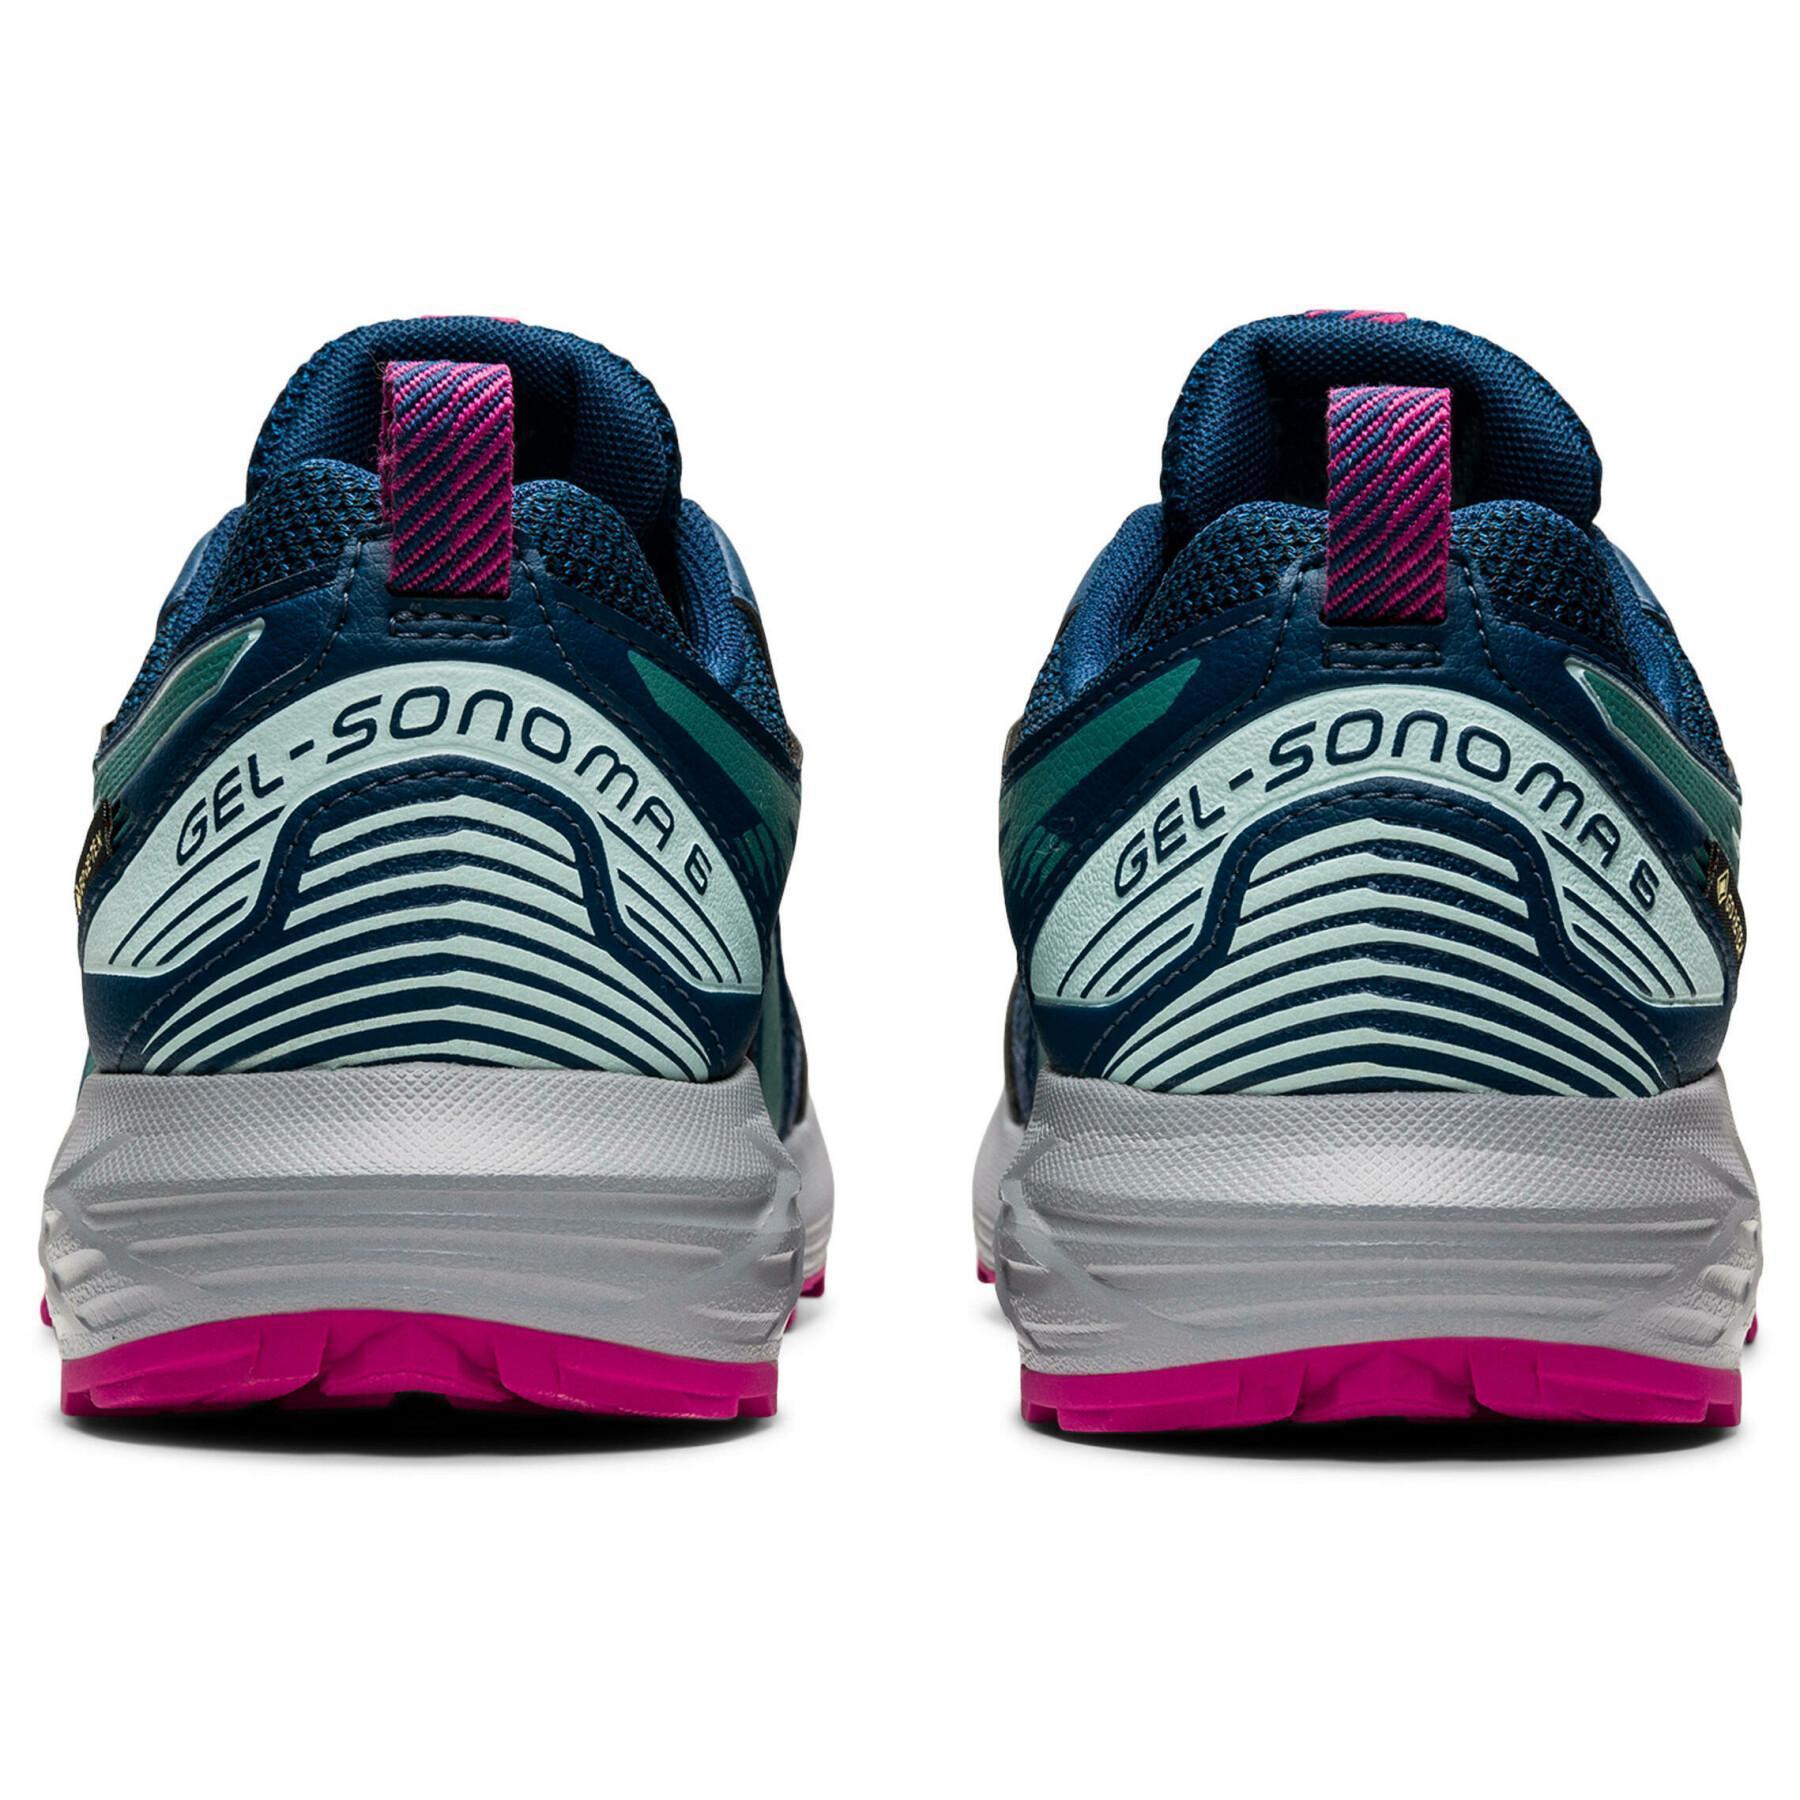 Schuhe für Frauen Asics Gel-Sonoma 6 G-Tx GTX